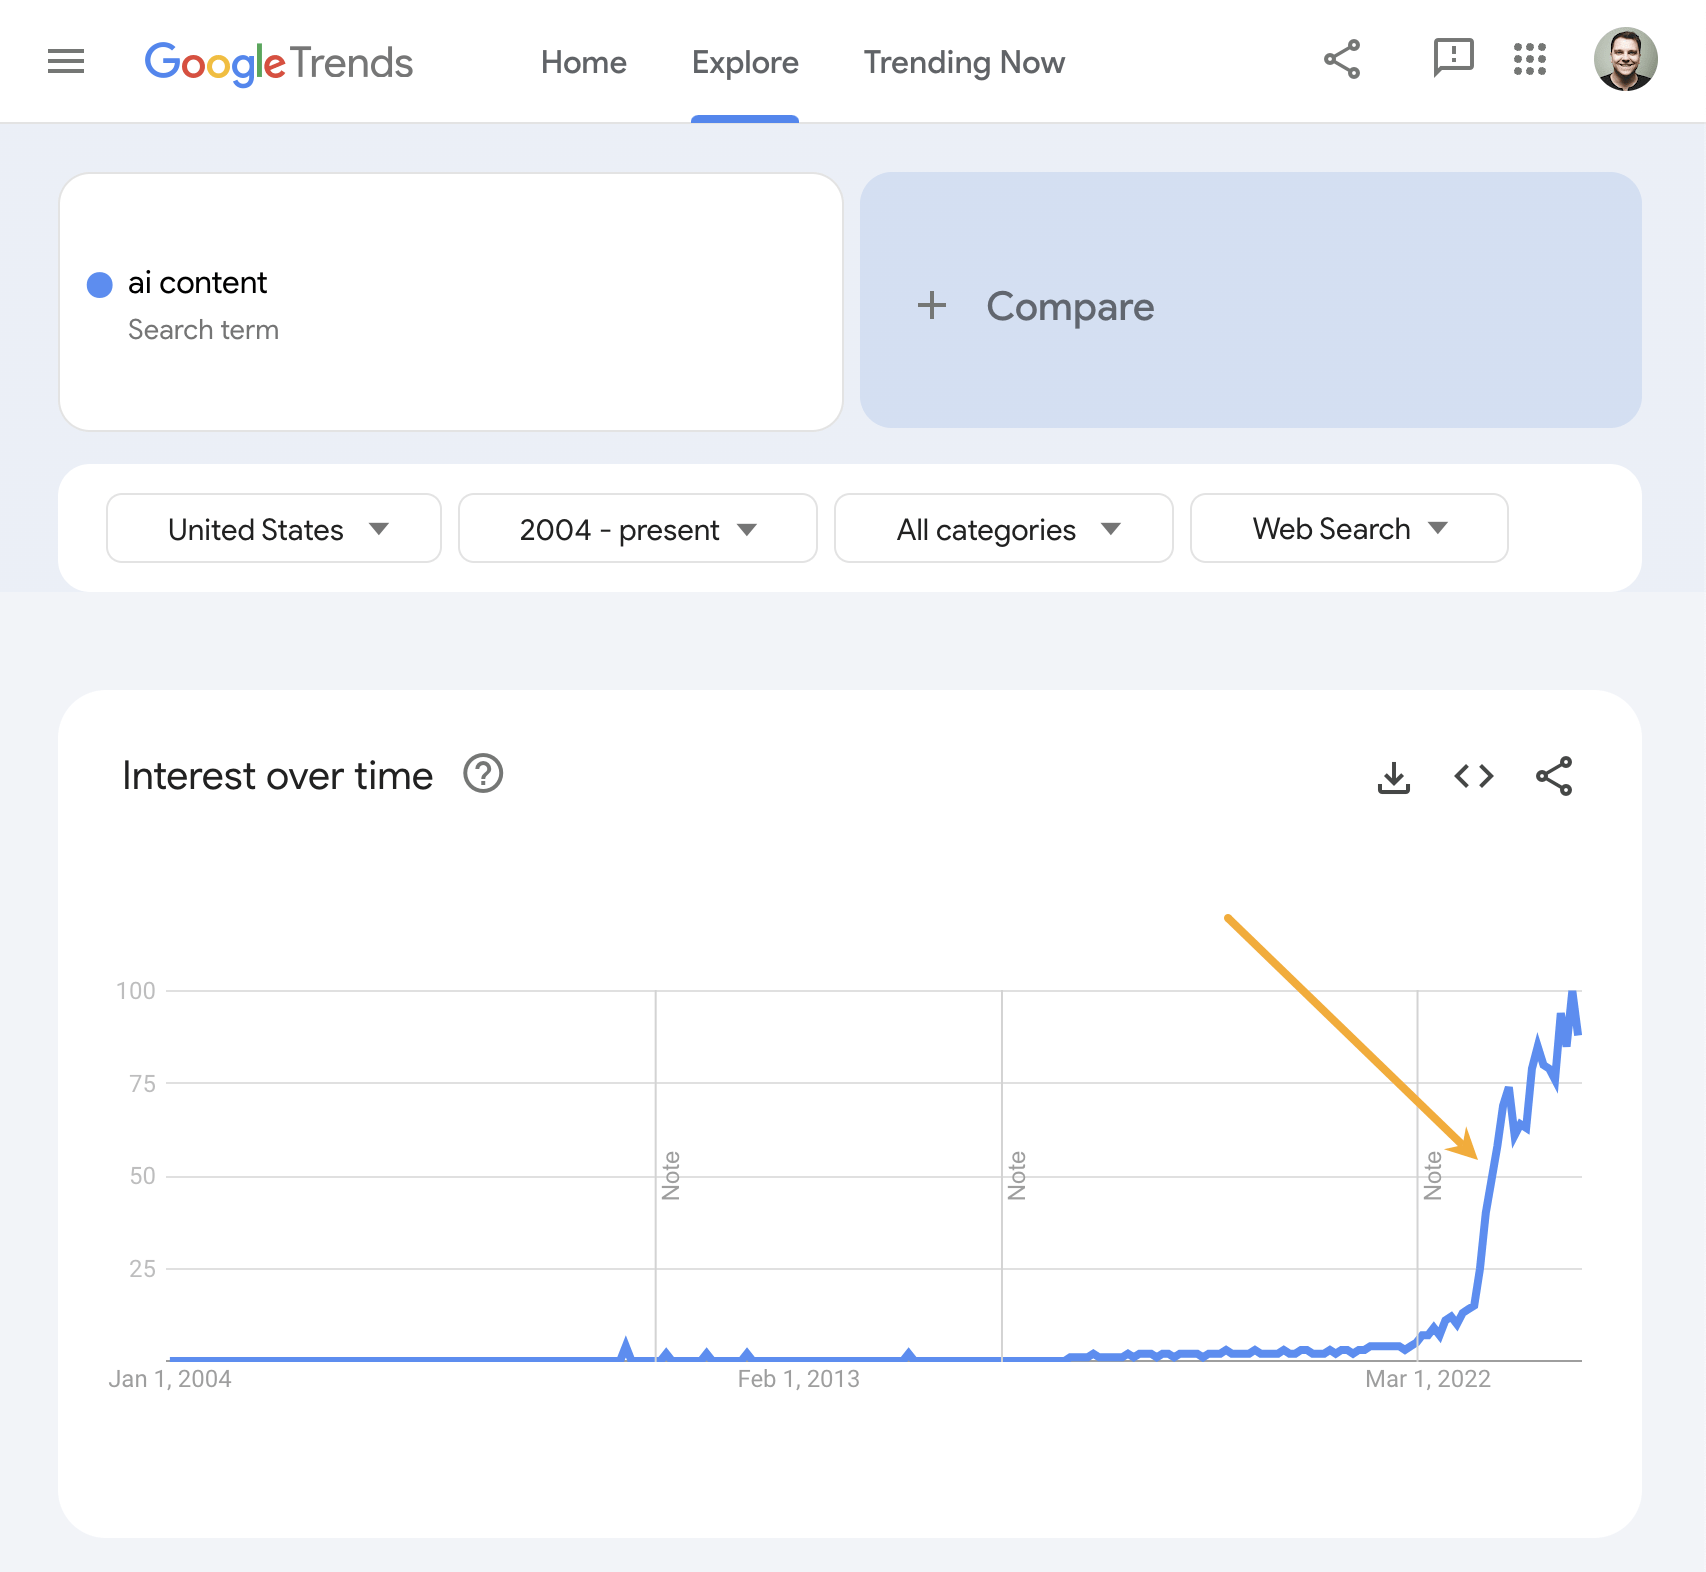 Trend for "AI content" via Google Trends